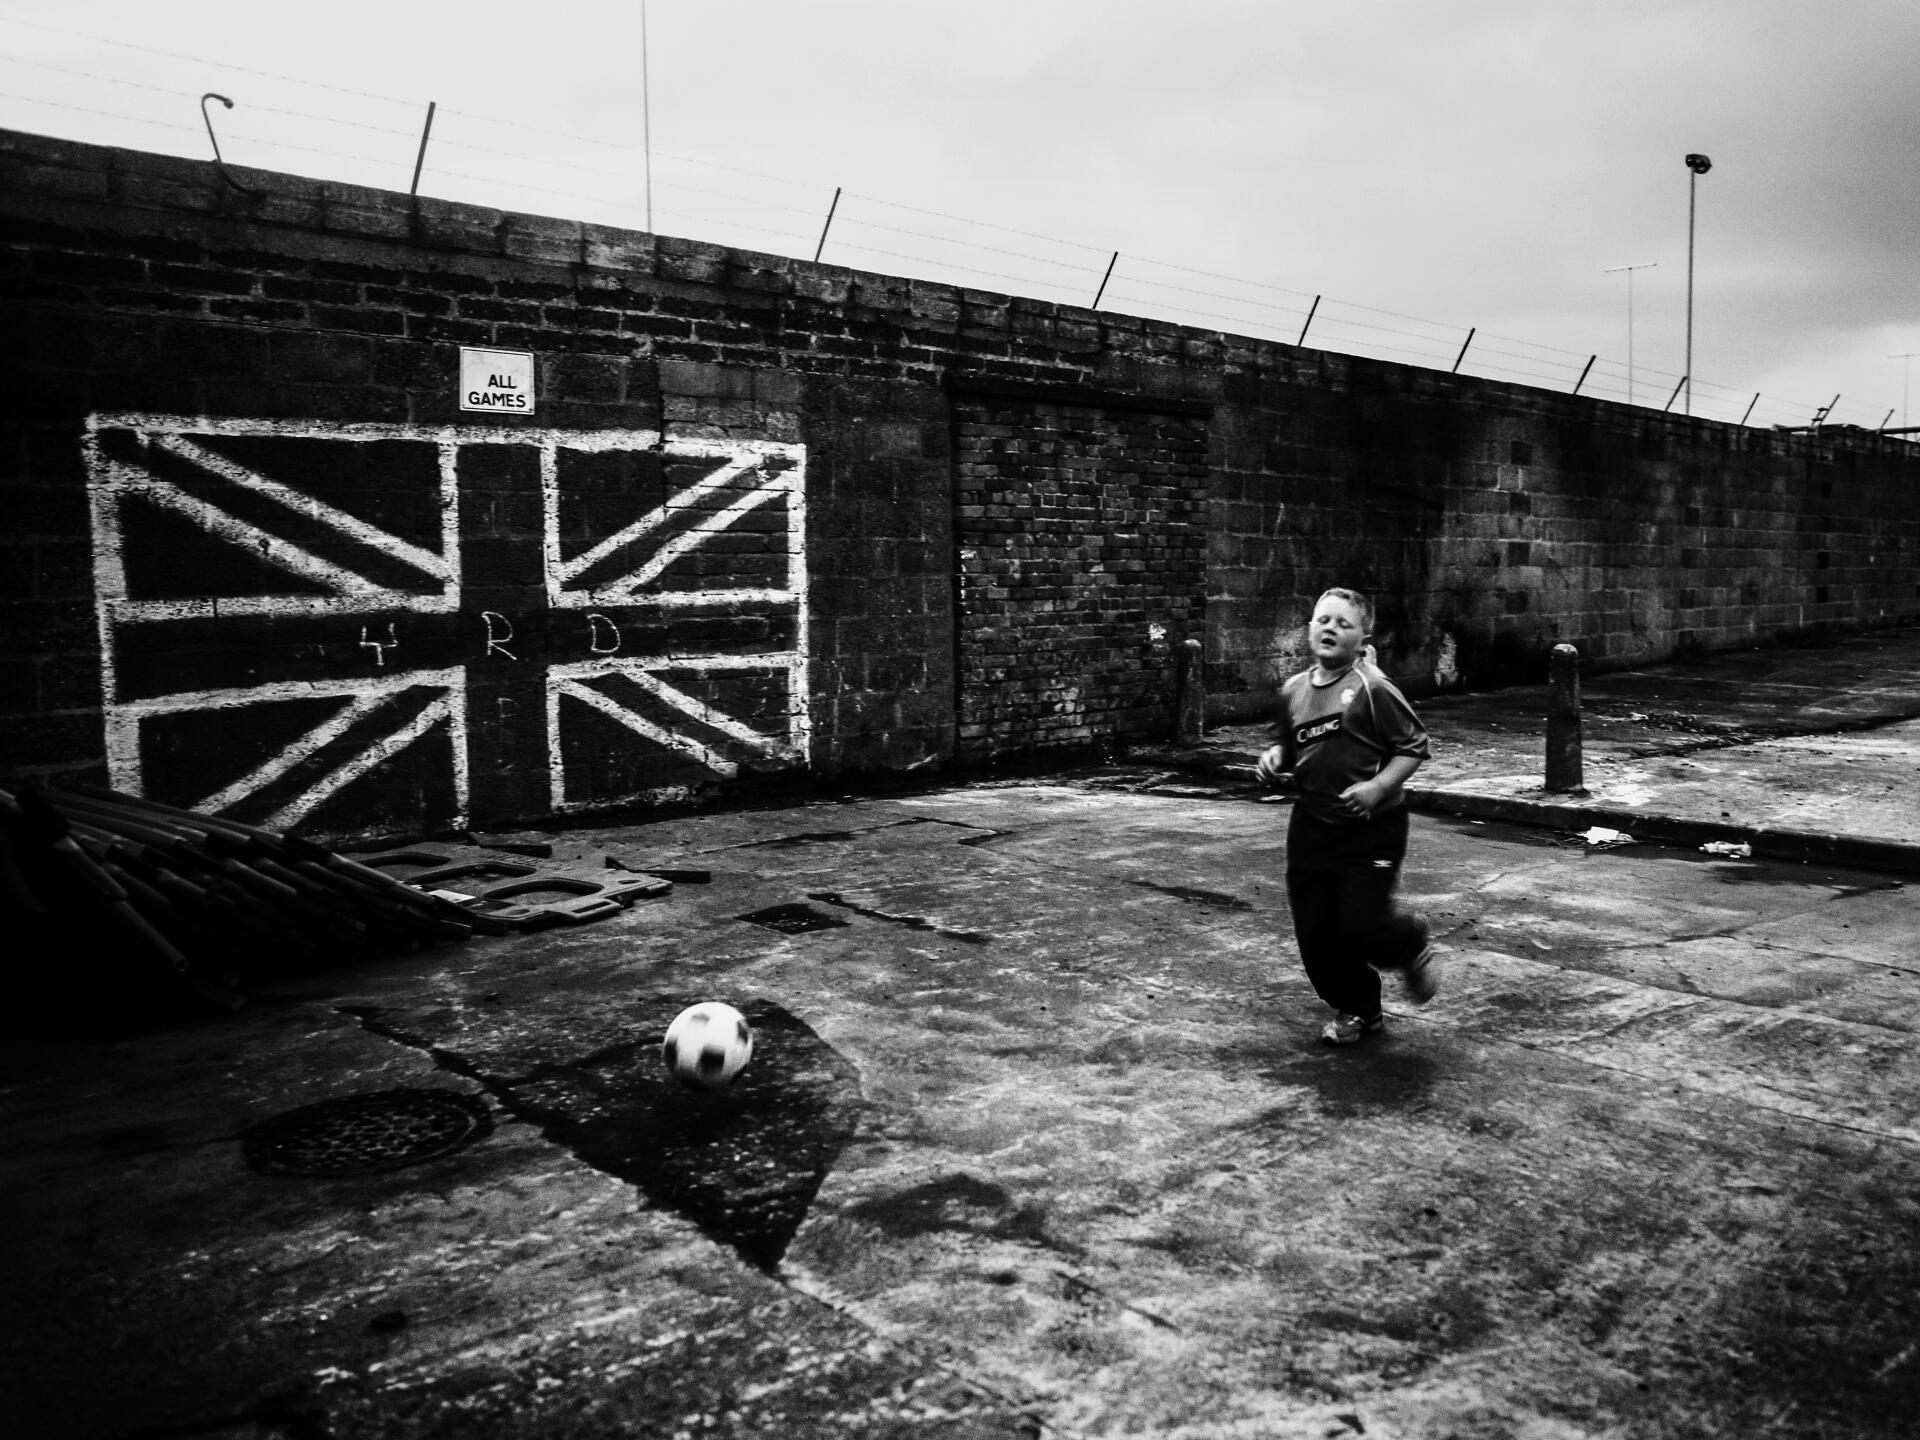 Un garçon joue au football devant le drapeau anglais peint sur le mur , dans le quartier de Shankill à Belfast. Extrait du livre « Wee Muckers – Youth of Belfast », de Toby Binder.